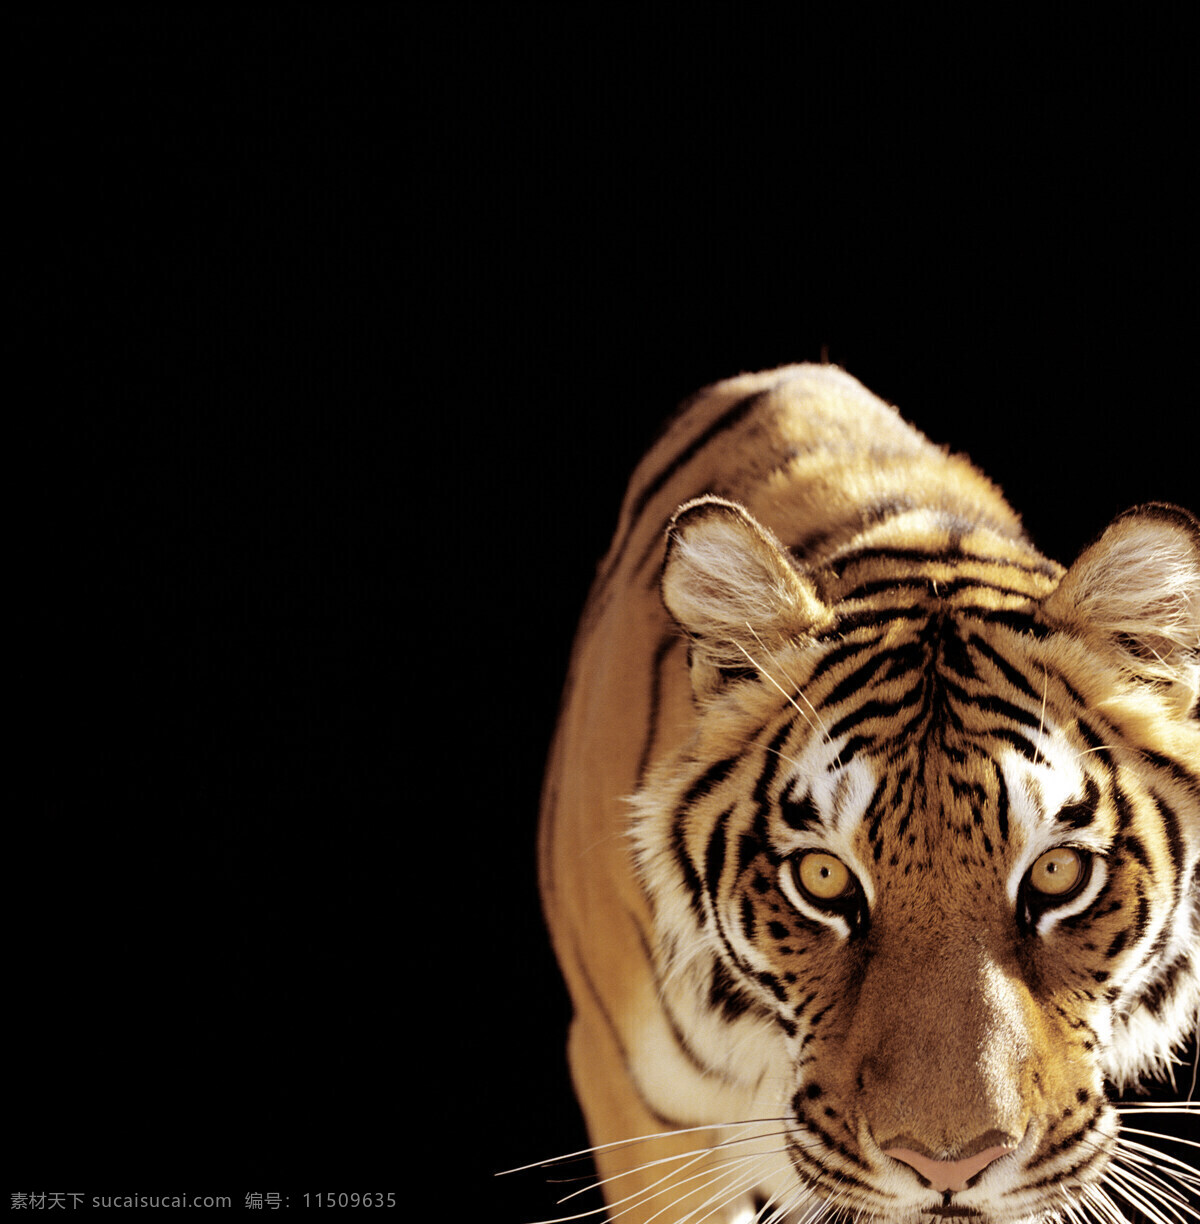 华南虎 吊睛白额虎 老虎 动物 凶猛 野生动物 生物世界